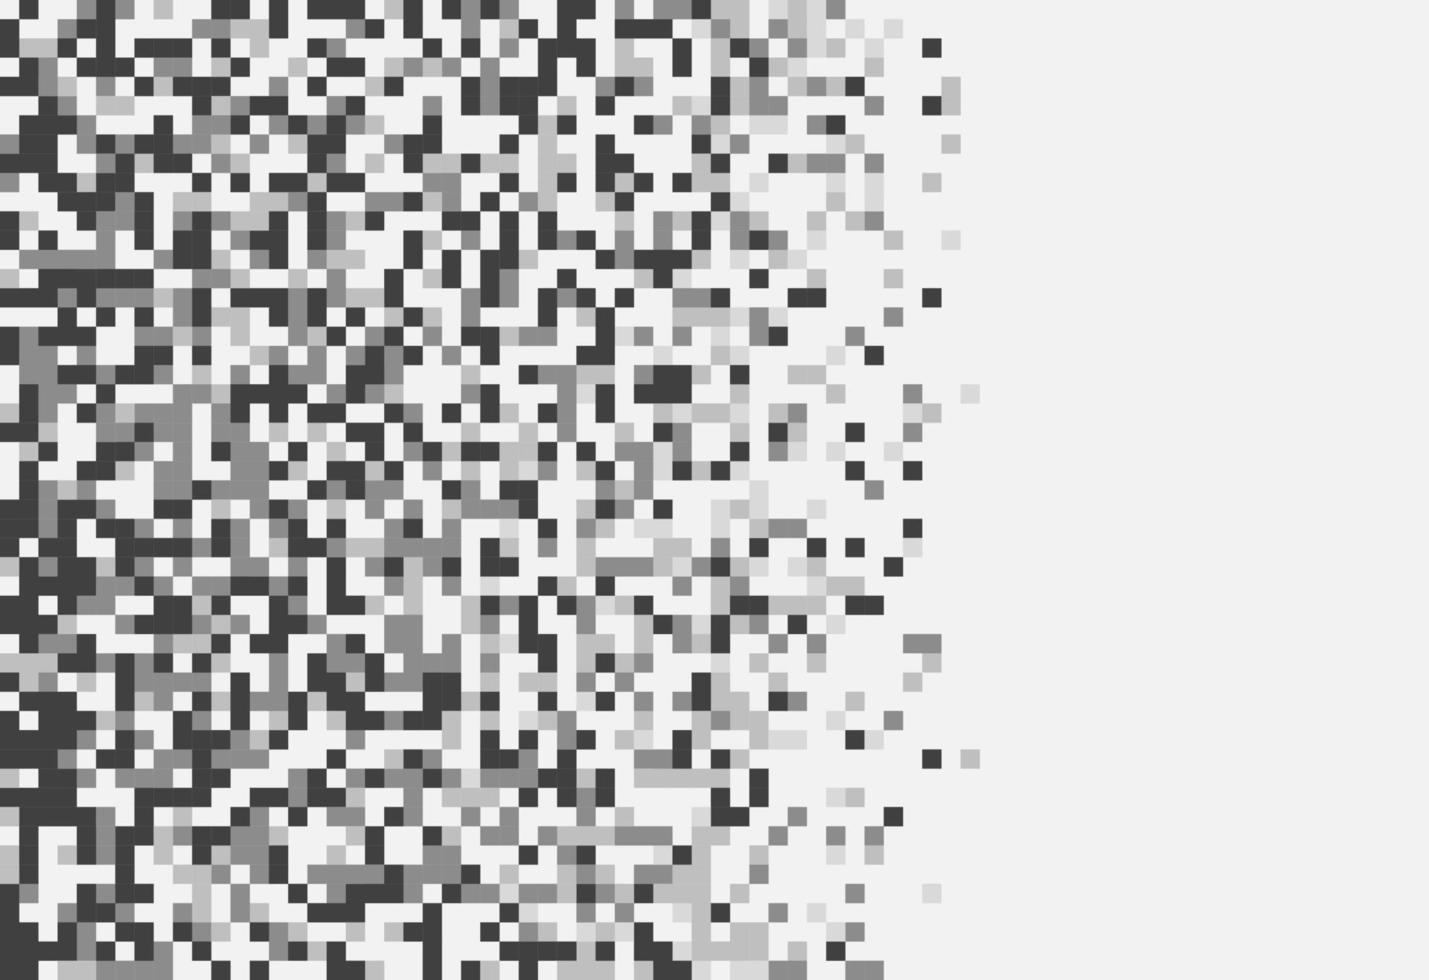 padrão abstrato de pixel de mosaico geométrico. fundo preto e branco. desenho vetorial do seu modelo gráfico de banner de cartaz de panfleto vetor